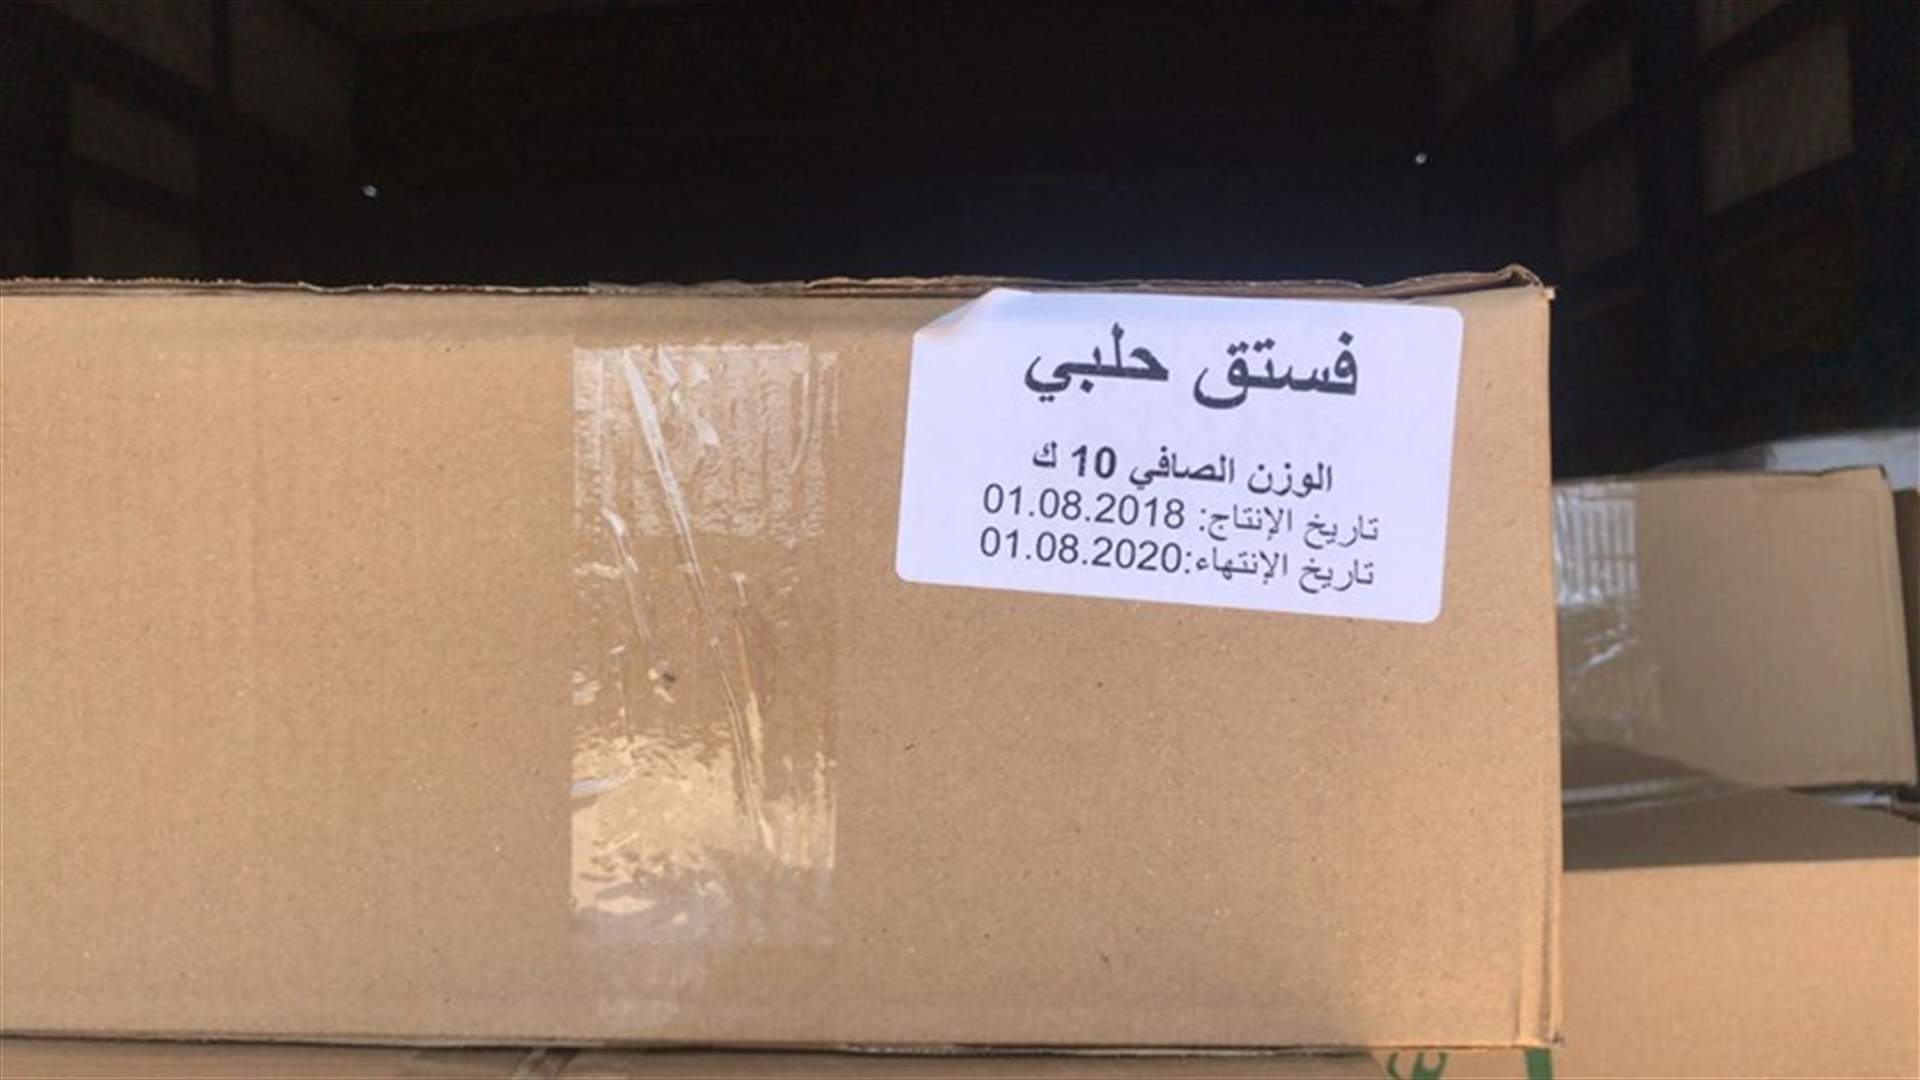 ضبط 2 طن من الفستق الحلبي المهرب.. وتوجيهات لتوزيعها على الجمعيات الخيرية (صور)